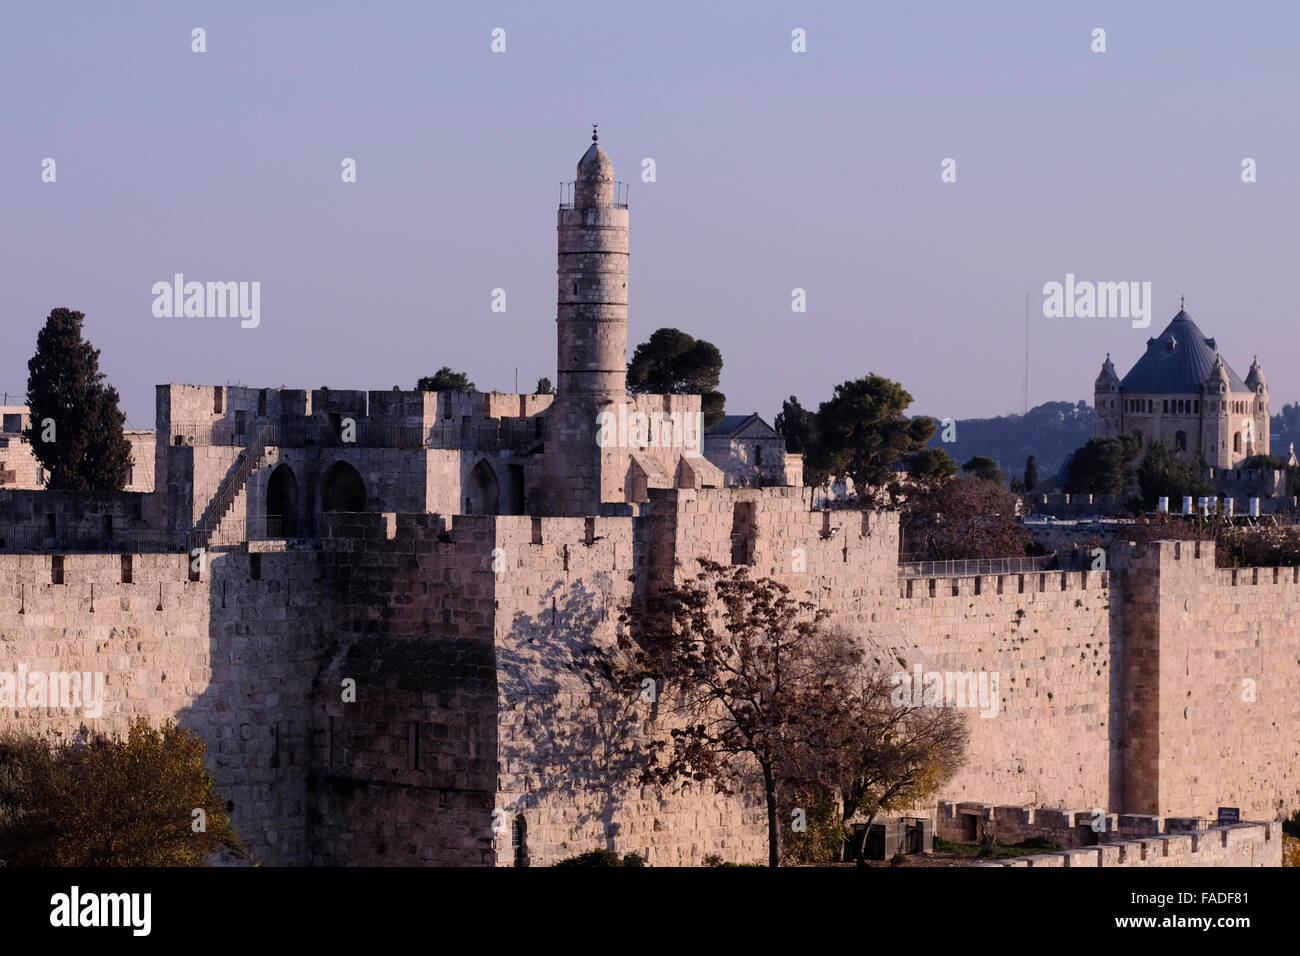 La Tour de David, également connu sous le nom de la citadelle de Jérusalem et les murs ottomans entourant l'ouest de la vieille ville de Jérusalem Israël Banque D'Images